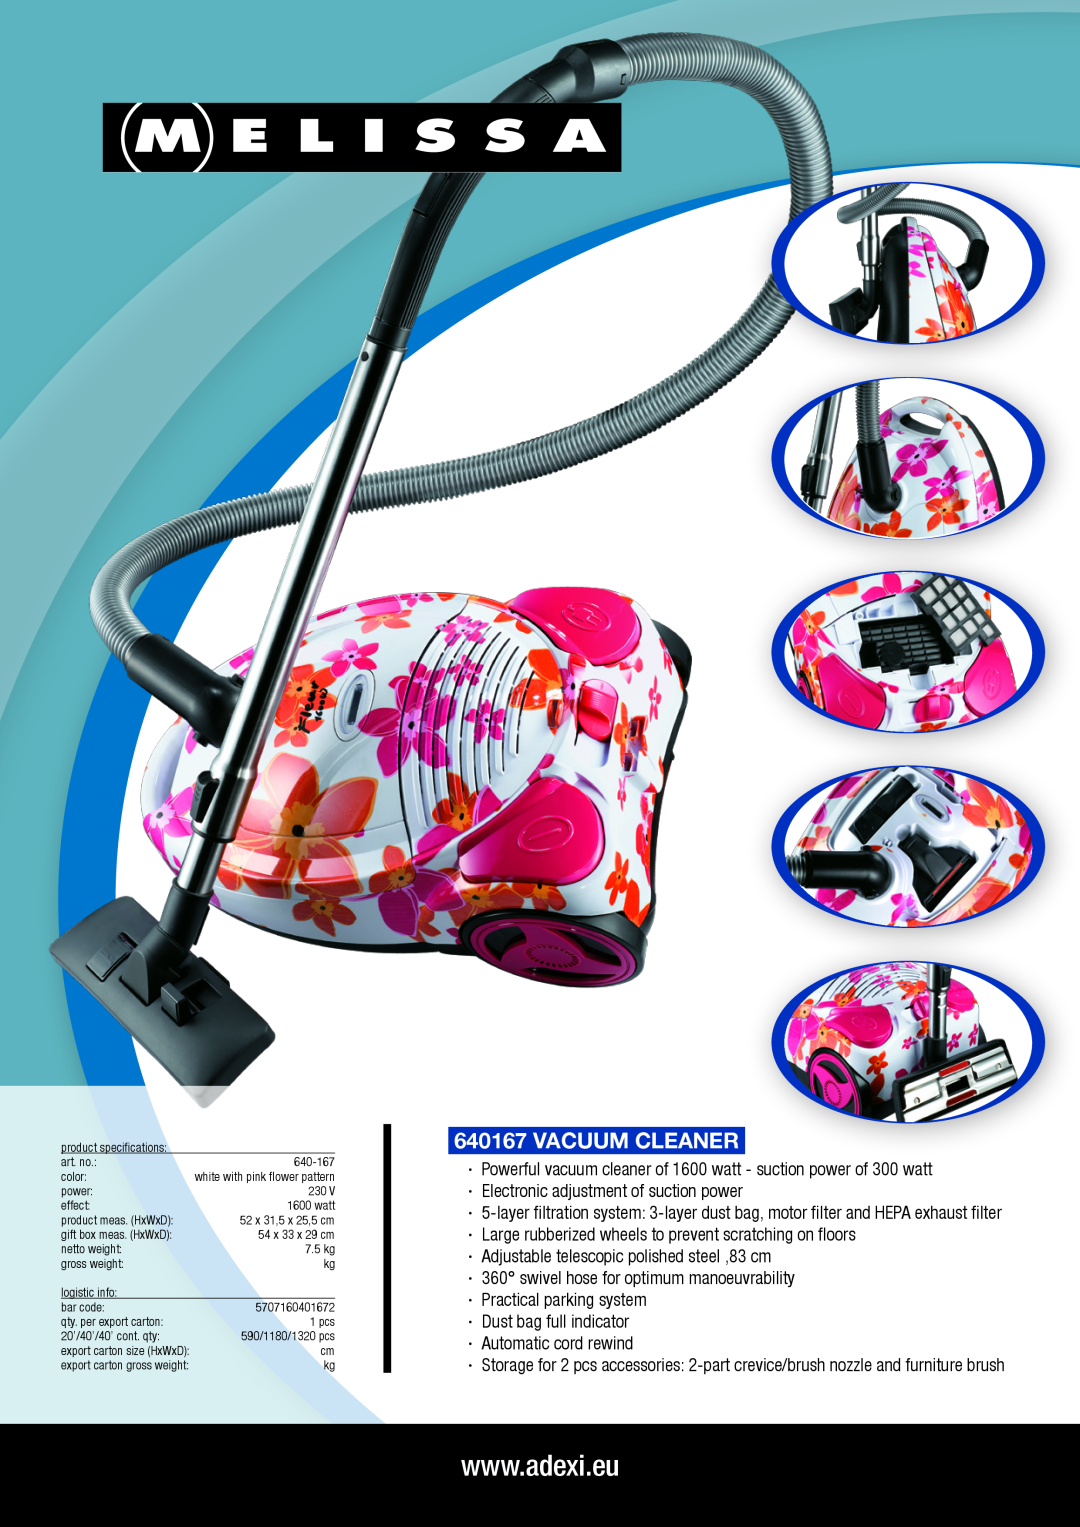 Melissa 640167 manual vacuum cleaner, ·· Adjustable telescopic polished steel ,83 cm 